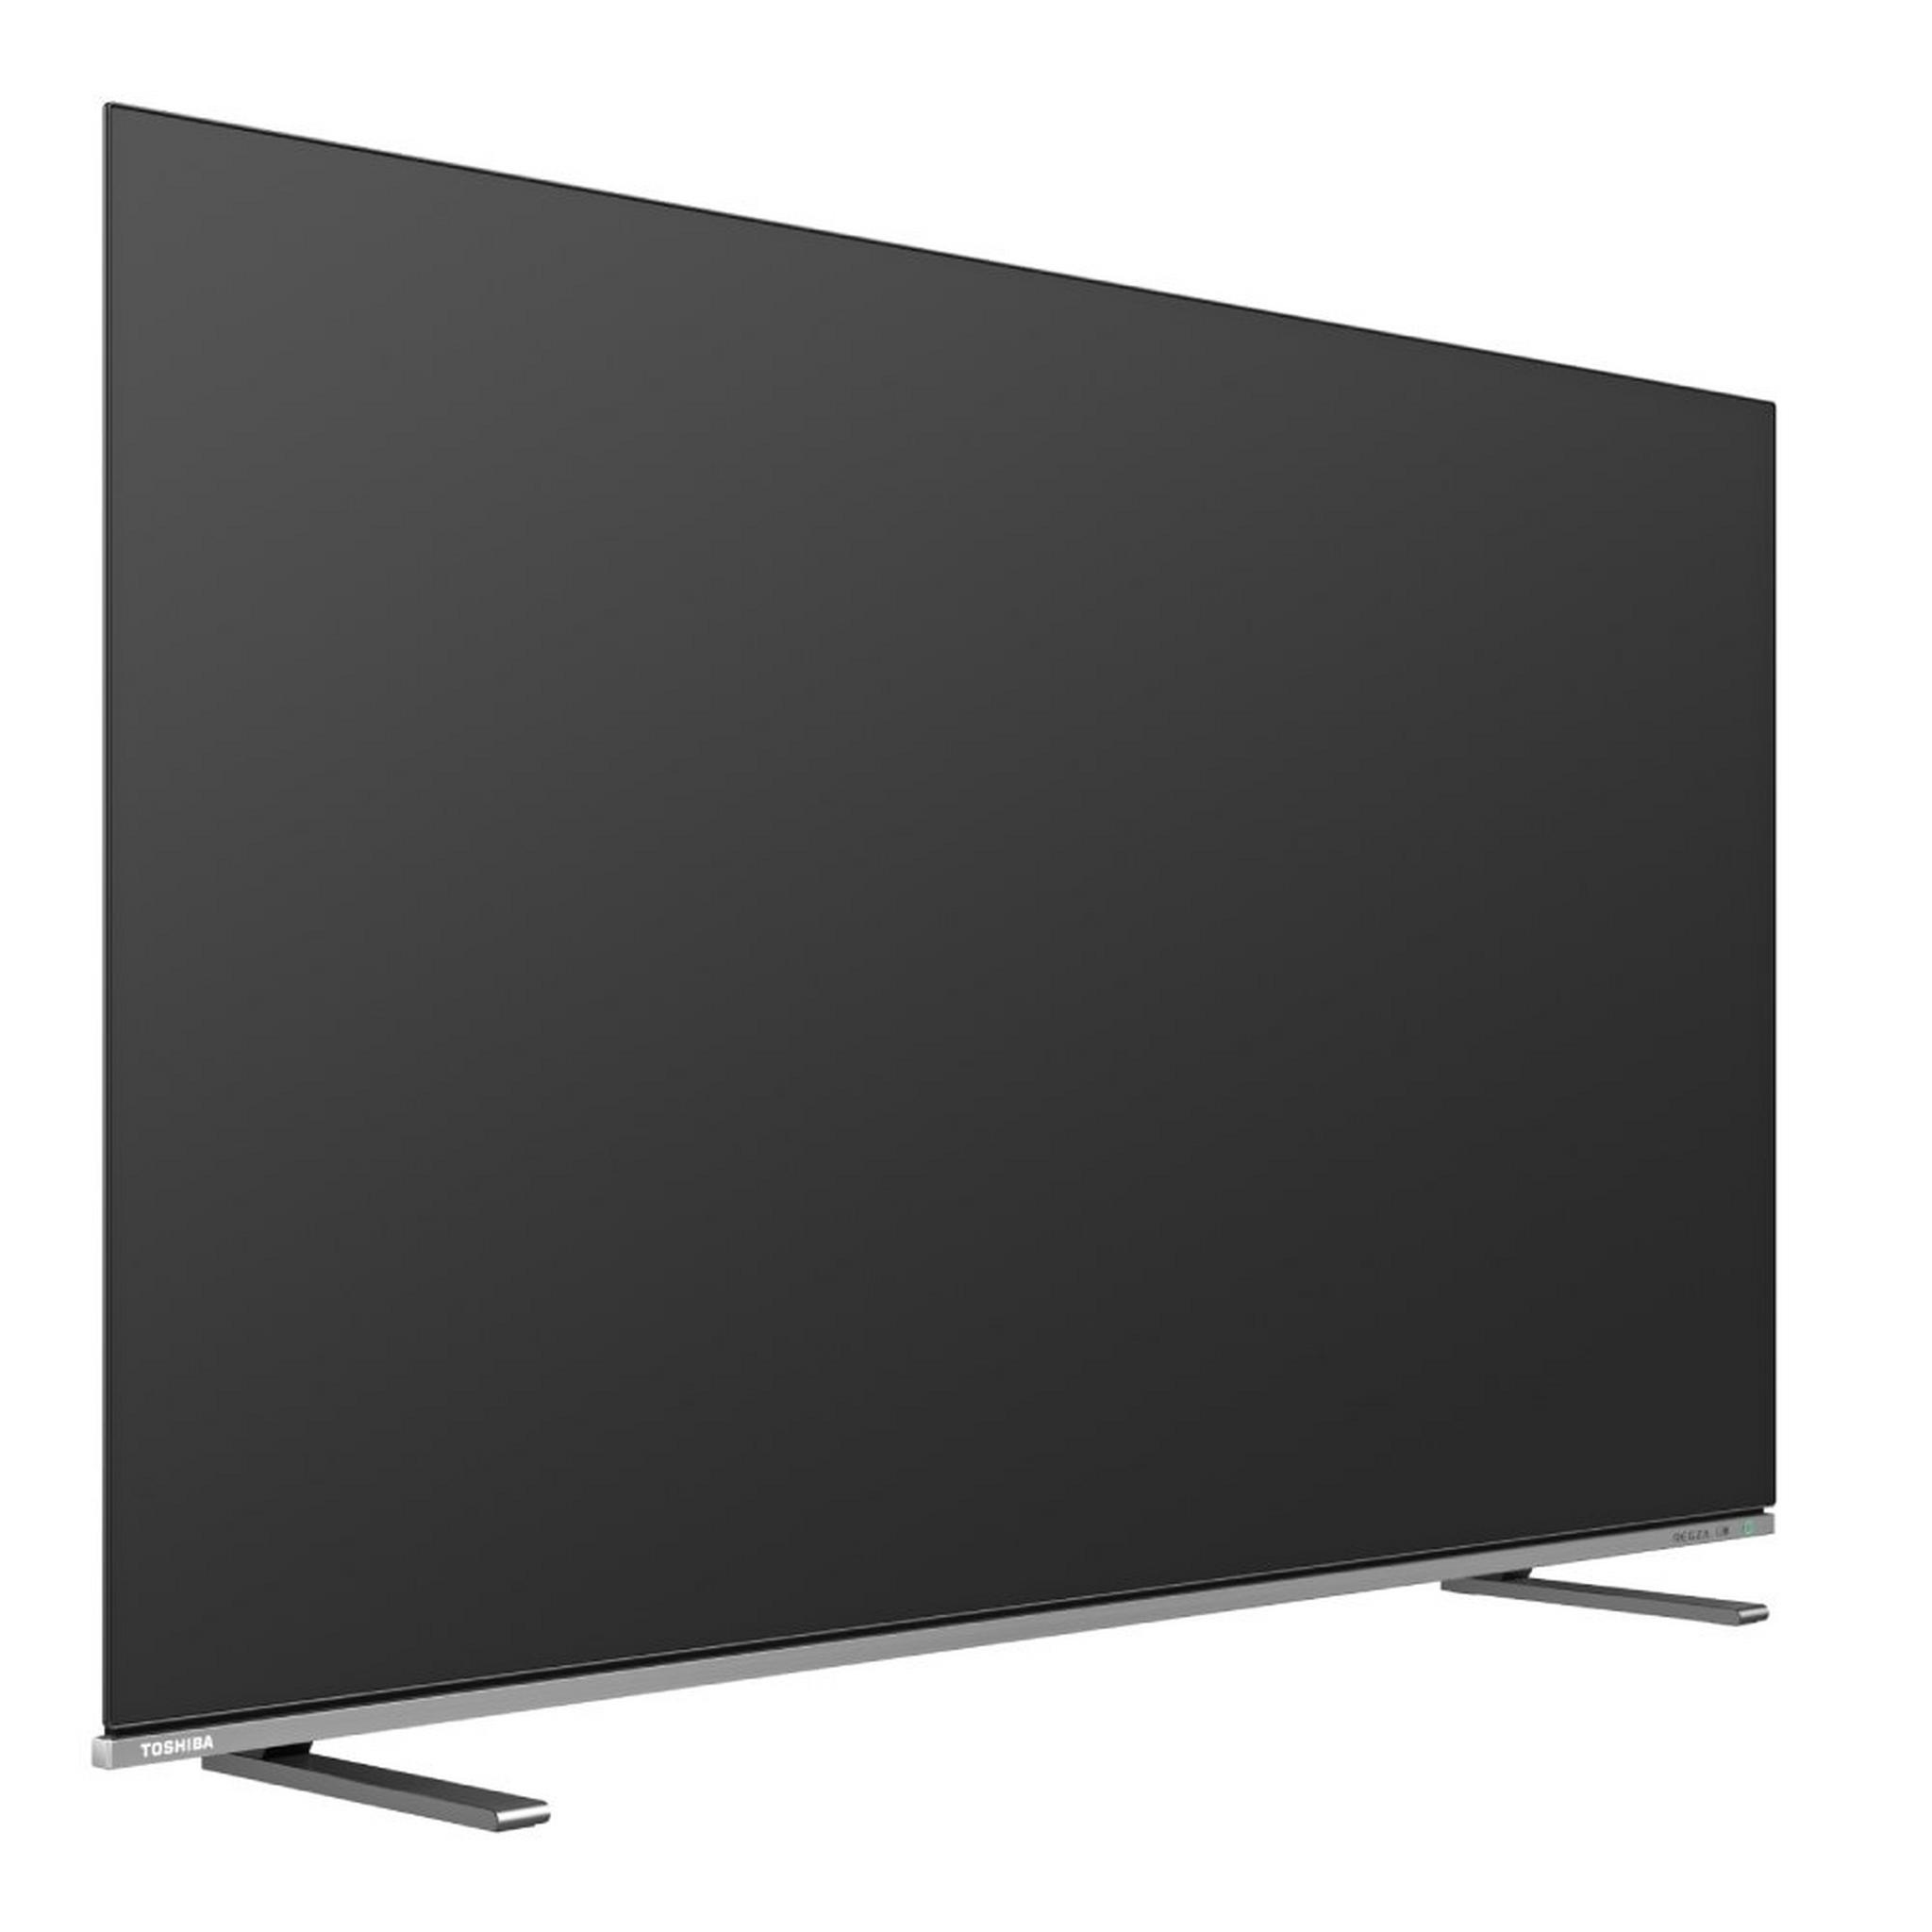 تلفزيون توشيبا الذكي ٦٥ بوصة فائق الوضوح أو إل إي دي ٦٠ هرتز (65X8900)